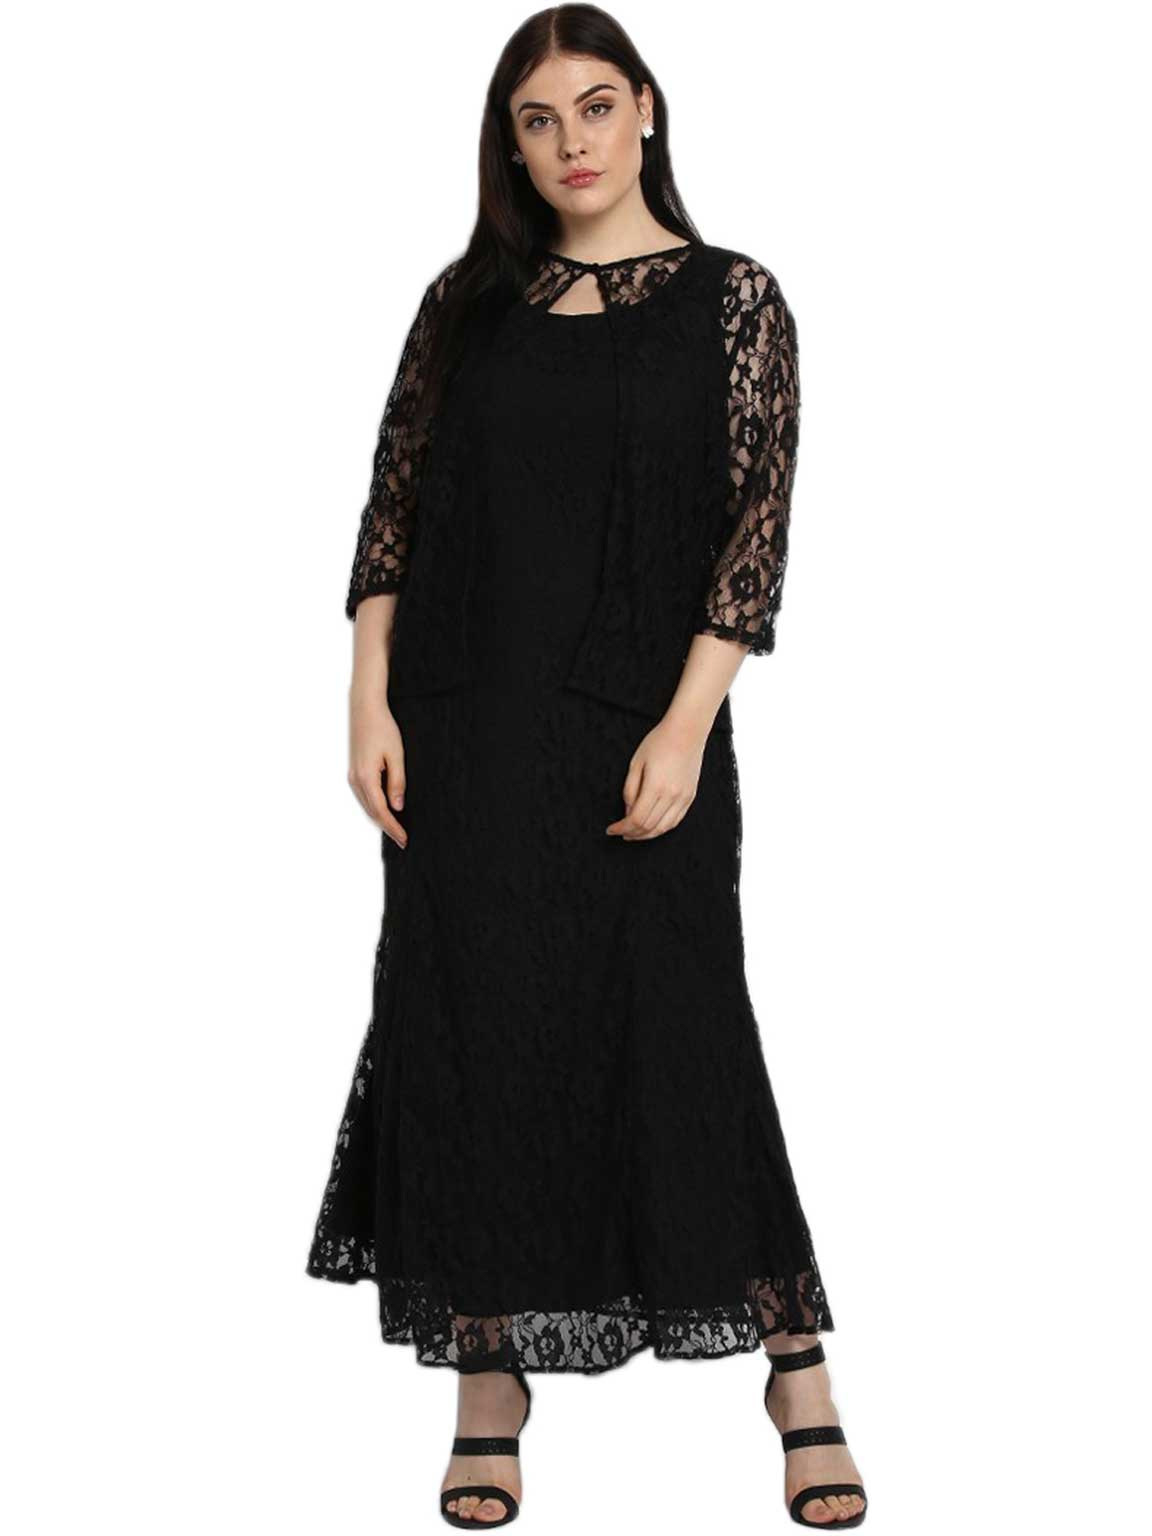 Wholesale Plus Size Black Sleeveless Maxi Dress With Lace Coat ...